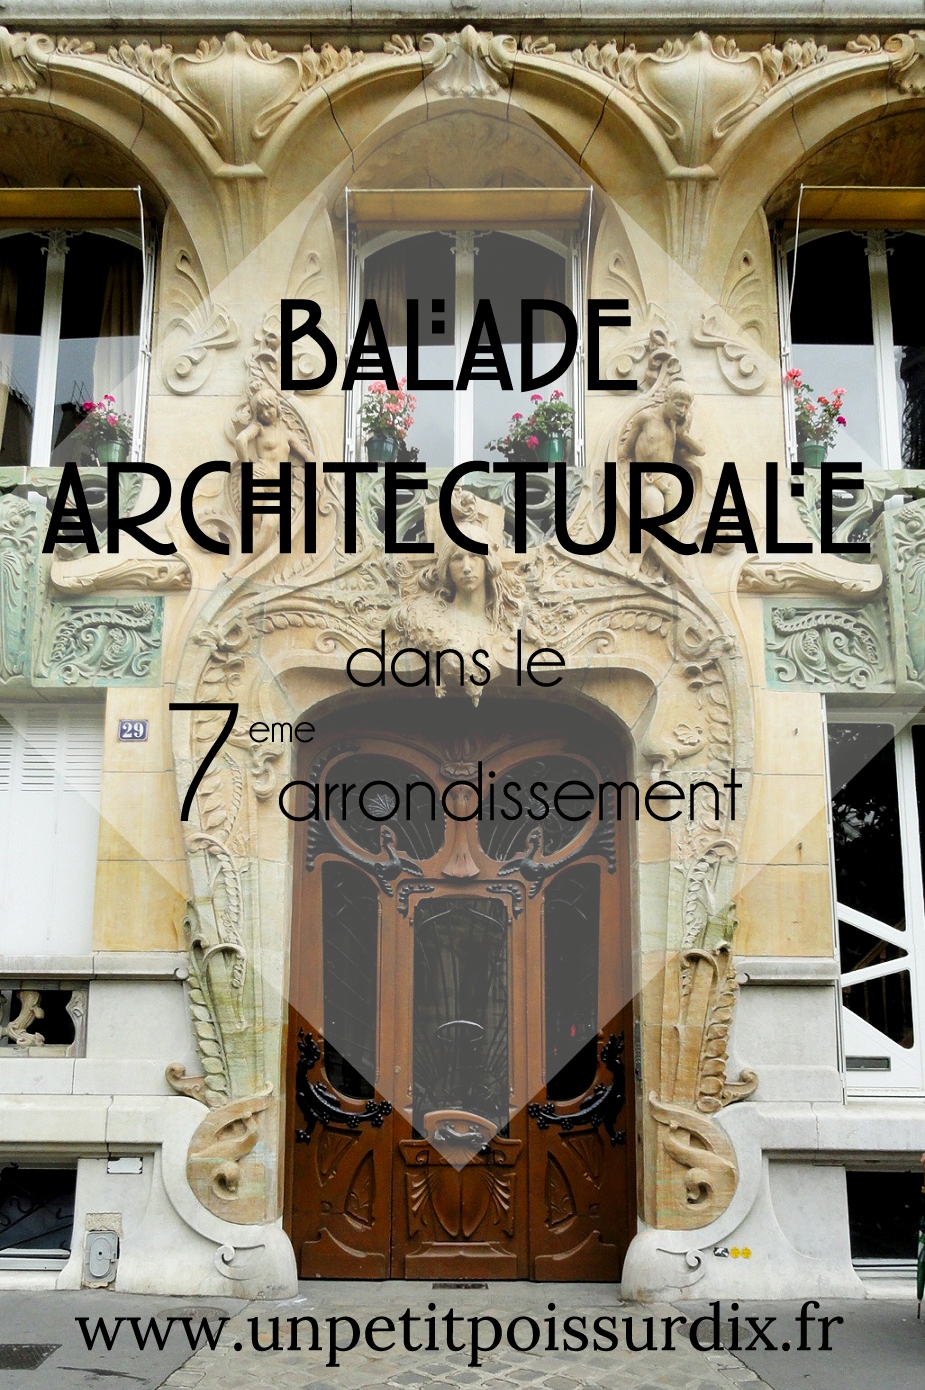 Balade architecturale dans le 7e arrondissement de Paris